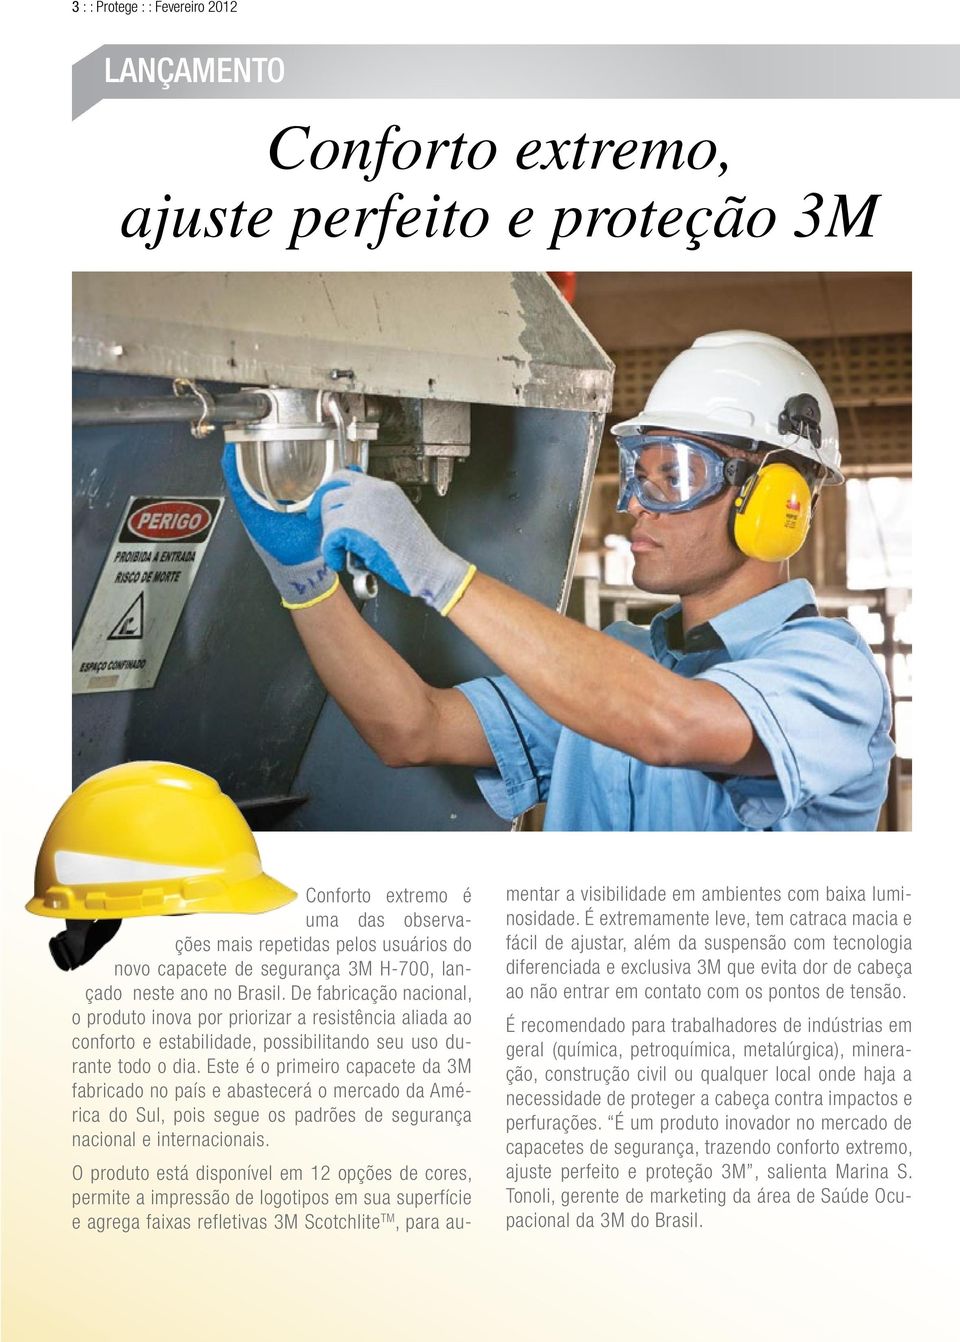 Este é o primeiro capacete da 3M fabricado no país e abastecerá o mercado da América do Sul, pois segue os padrões de segurança nacional e internacionais.